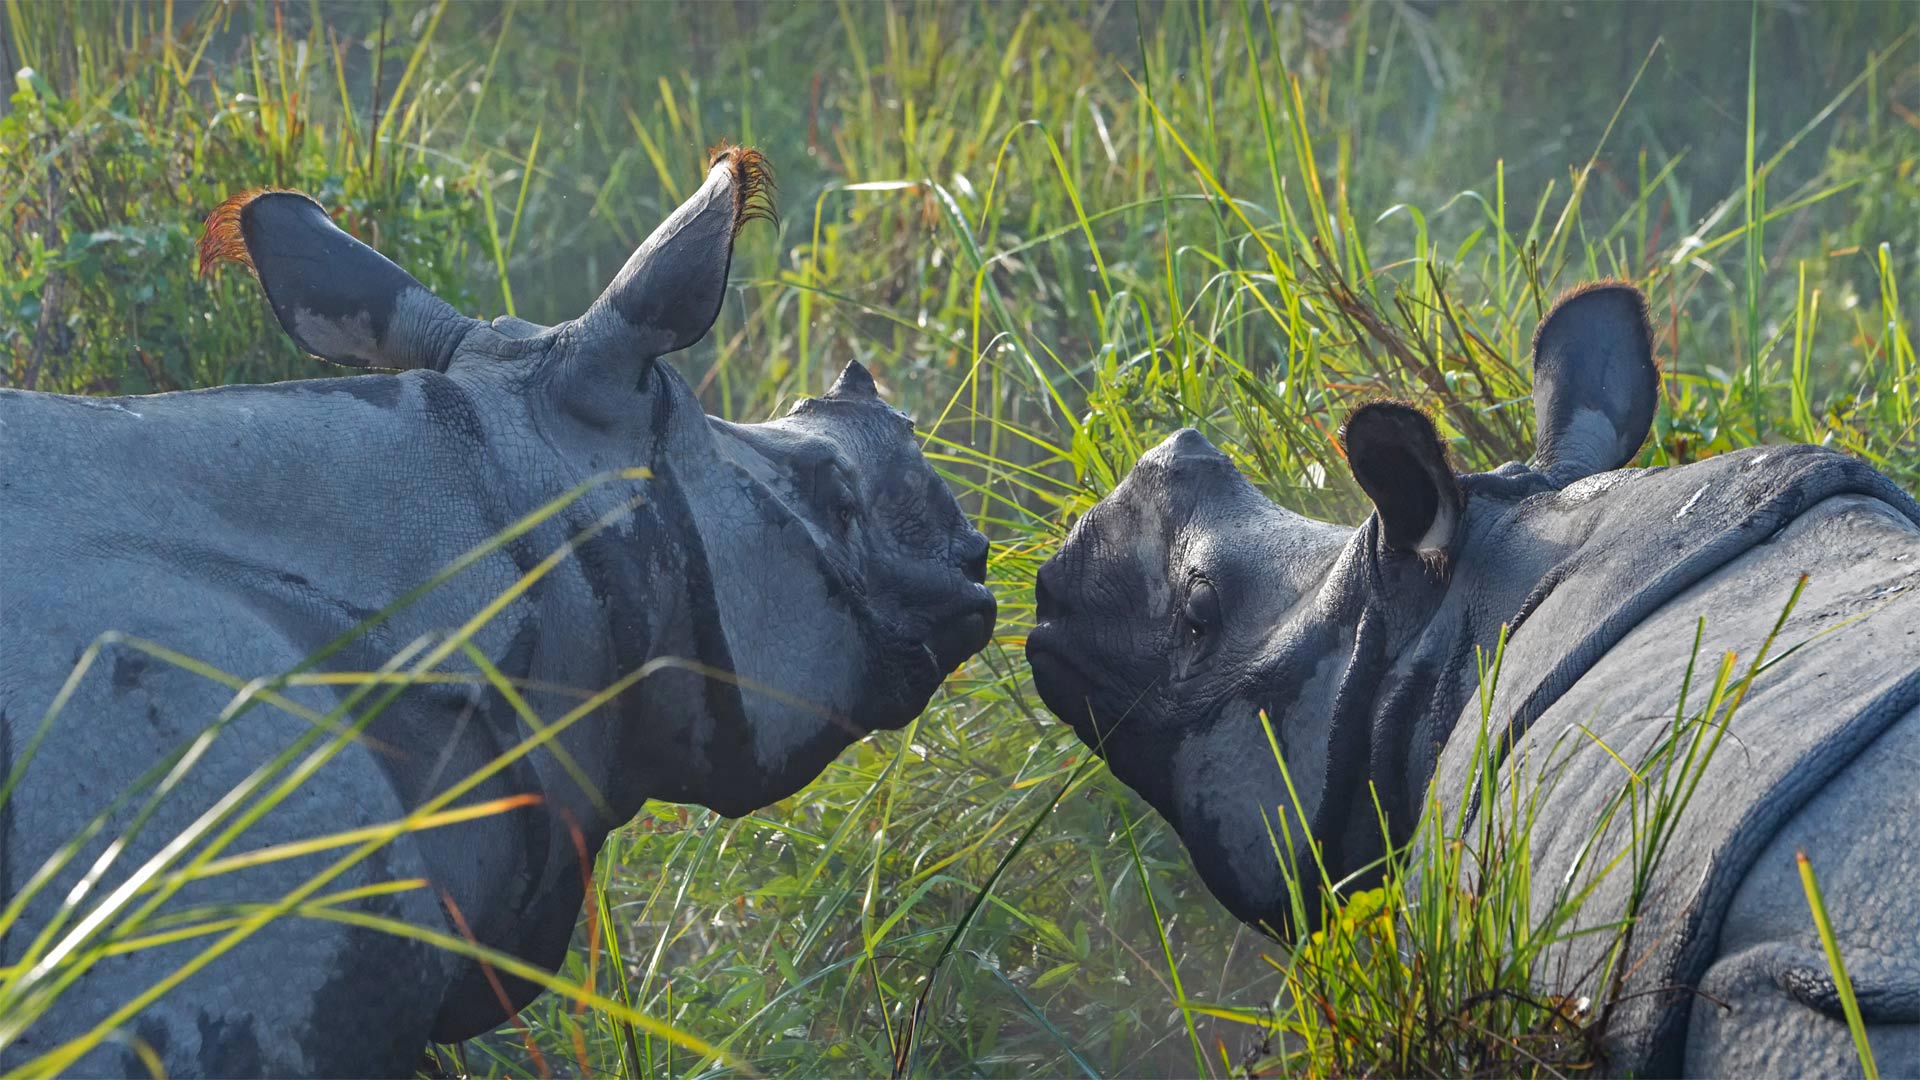 Greater one-horned rhinoceroses in Kaziranga National Park, Assam, India - Robert Harding World Imagery/Shutterstock)